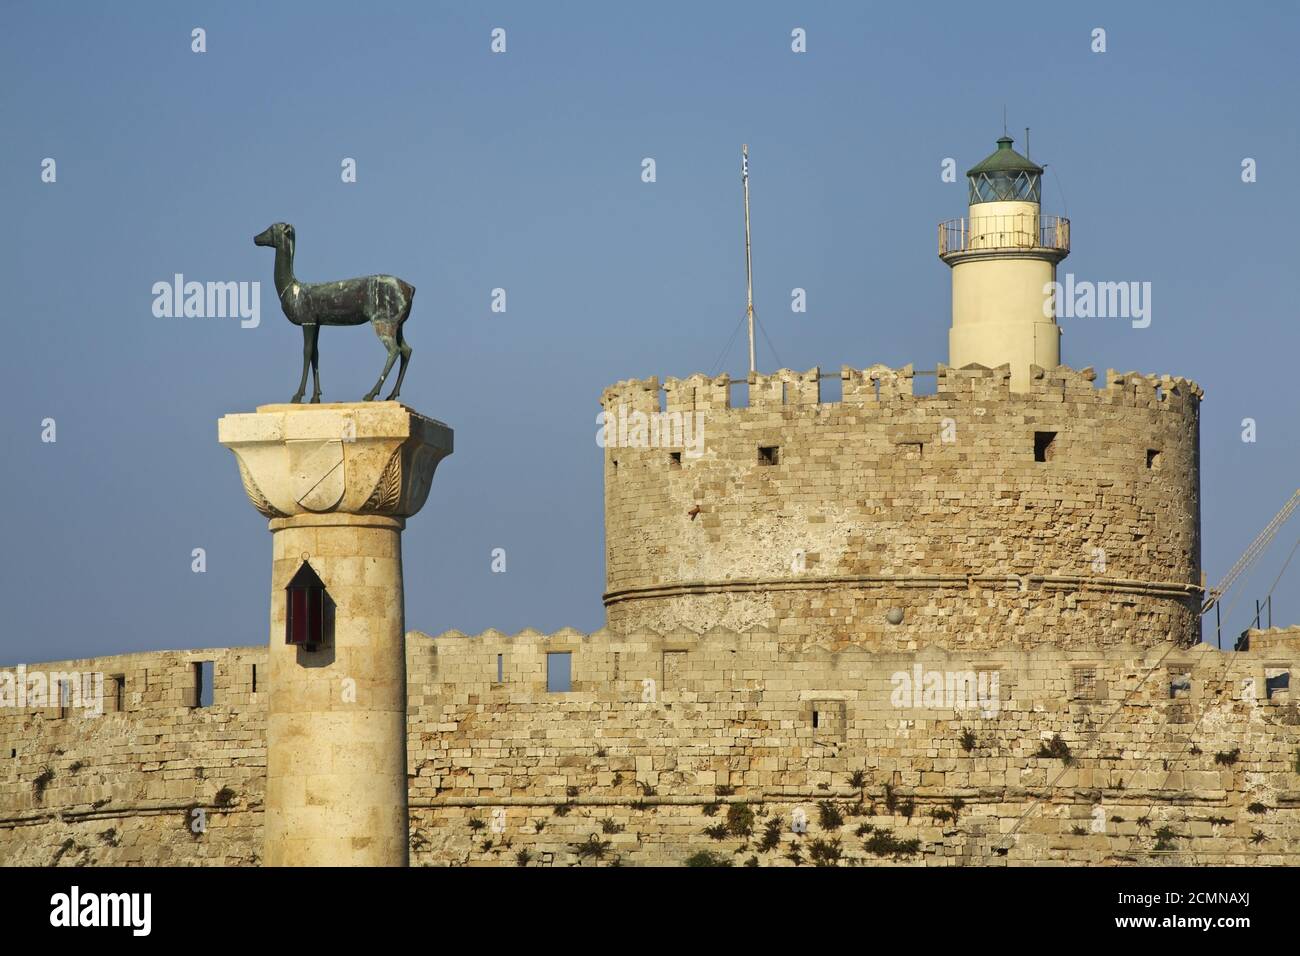 Cerf de bronze et fort de Saint-Nicolas dans la ville de Rhodes. Île de Rhodes. Grèce Banque D'Images